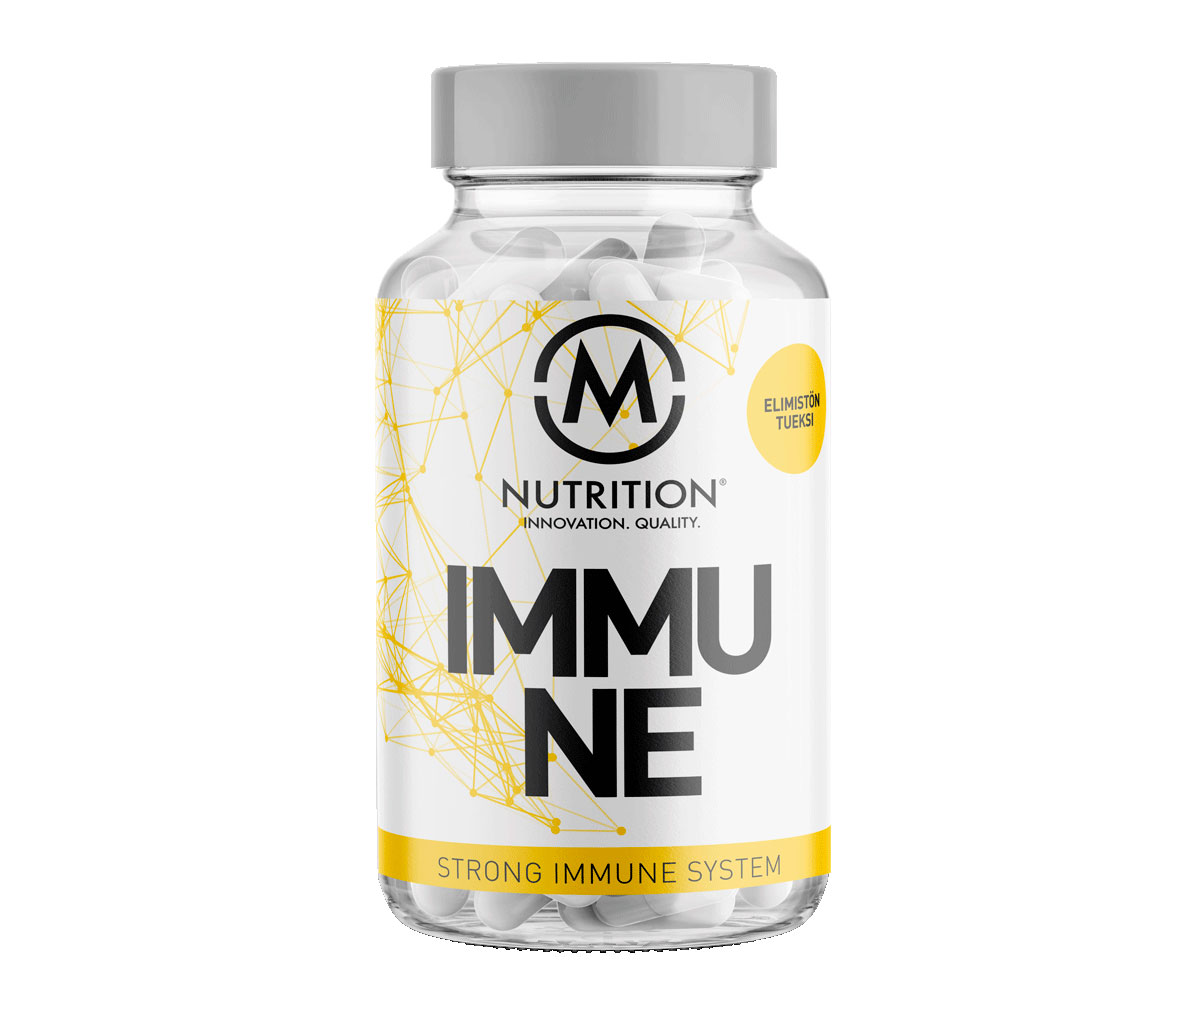 M-Nutrition Immune - vastustuskyvyn luotettavin taistelutoveri